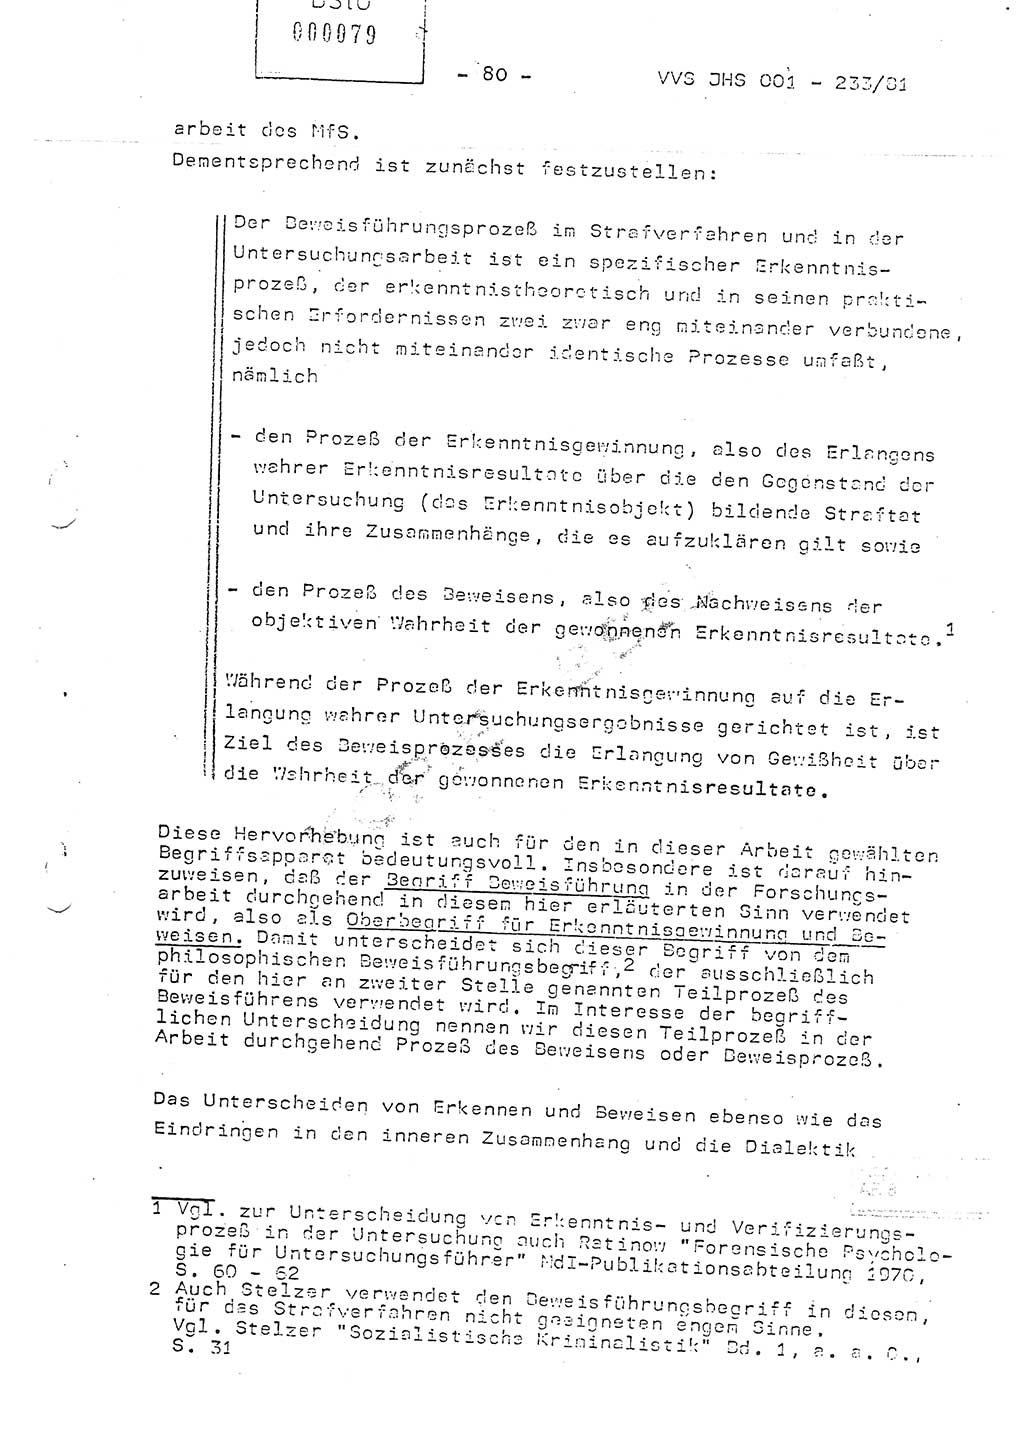 Dissertation Oberstleutnant Horst Zank (JHS), Oberstleutnant Dr. Karl-Heinz Knoblauch (JHS), Oberstleutnant Gustav-Adolf Kowalewski (HA Ⅸ), Oberstleutnant Wolfgang Plötner (HA Ⅸ), Ministerium für Staatssicherheit (MfS) [Deutsche Demokratische Republik (DDR)], Juristische Hochschule (JHS), Vertrauliche Verschlußsache (VVS) o001-233/81, Potsdam 1981, Blatt 80 (Diss. MfS DDR JHS VVS o001-233/81 1981, Bl. 80)